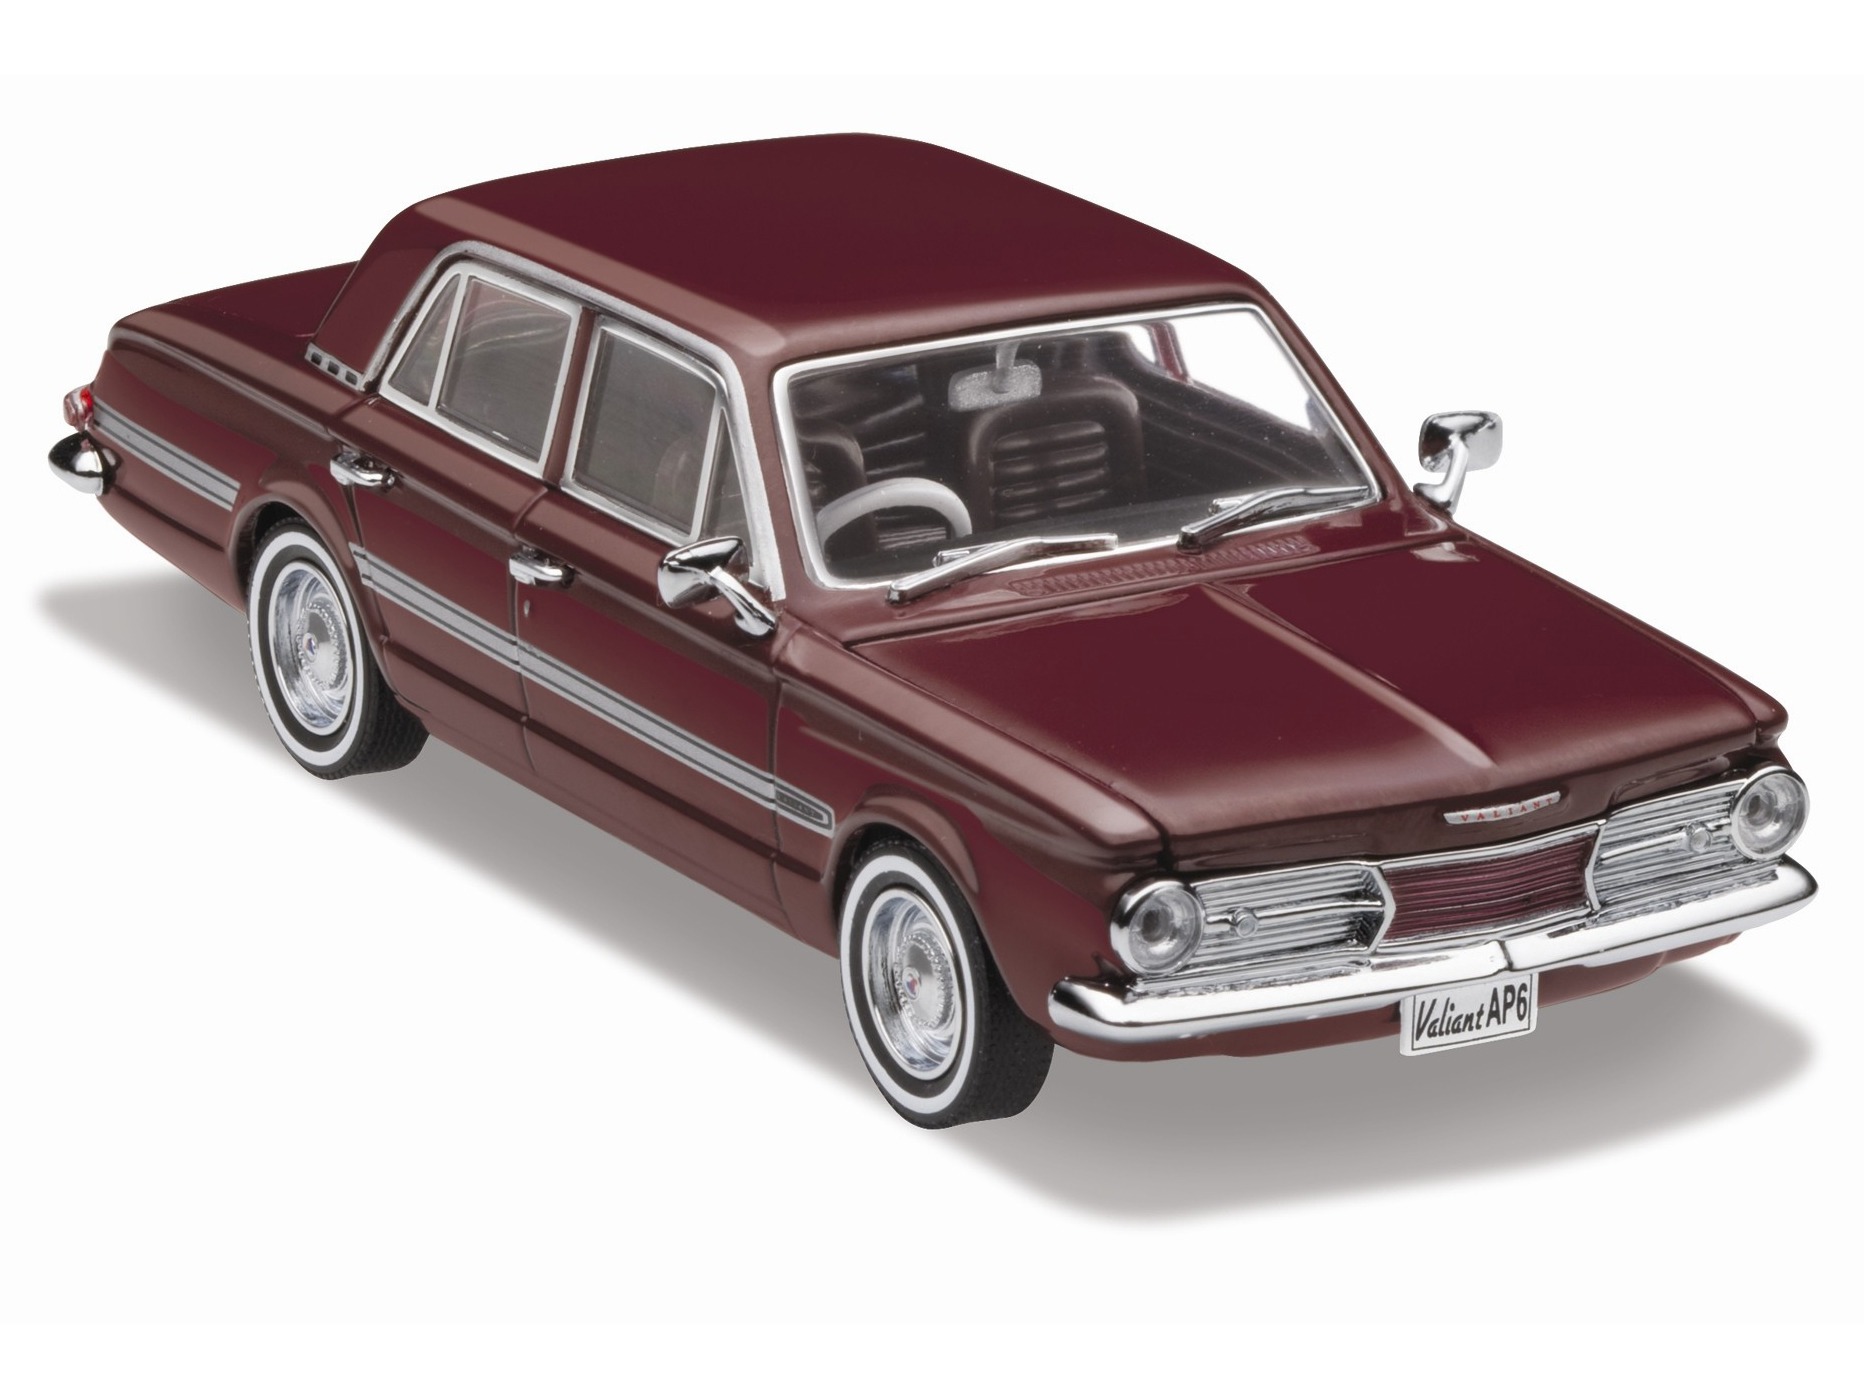 1965 Chrysler AP6 Valiant Regal – Dark Red